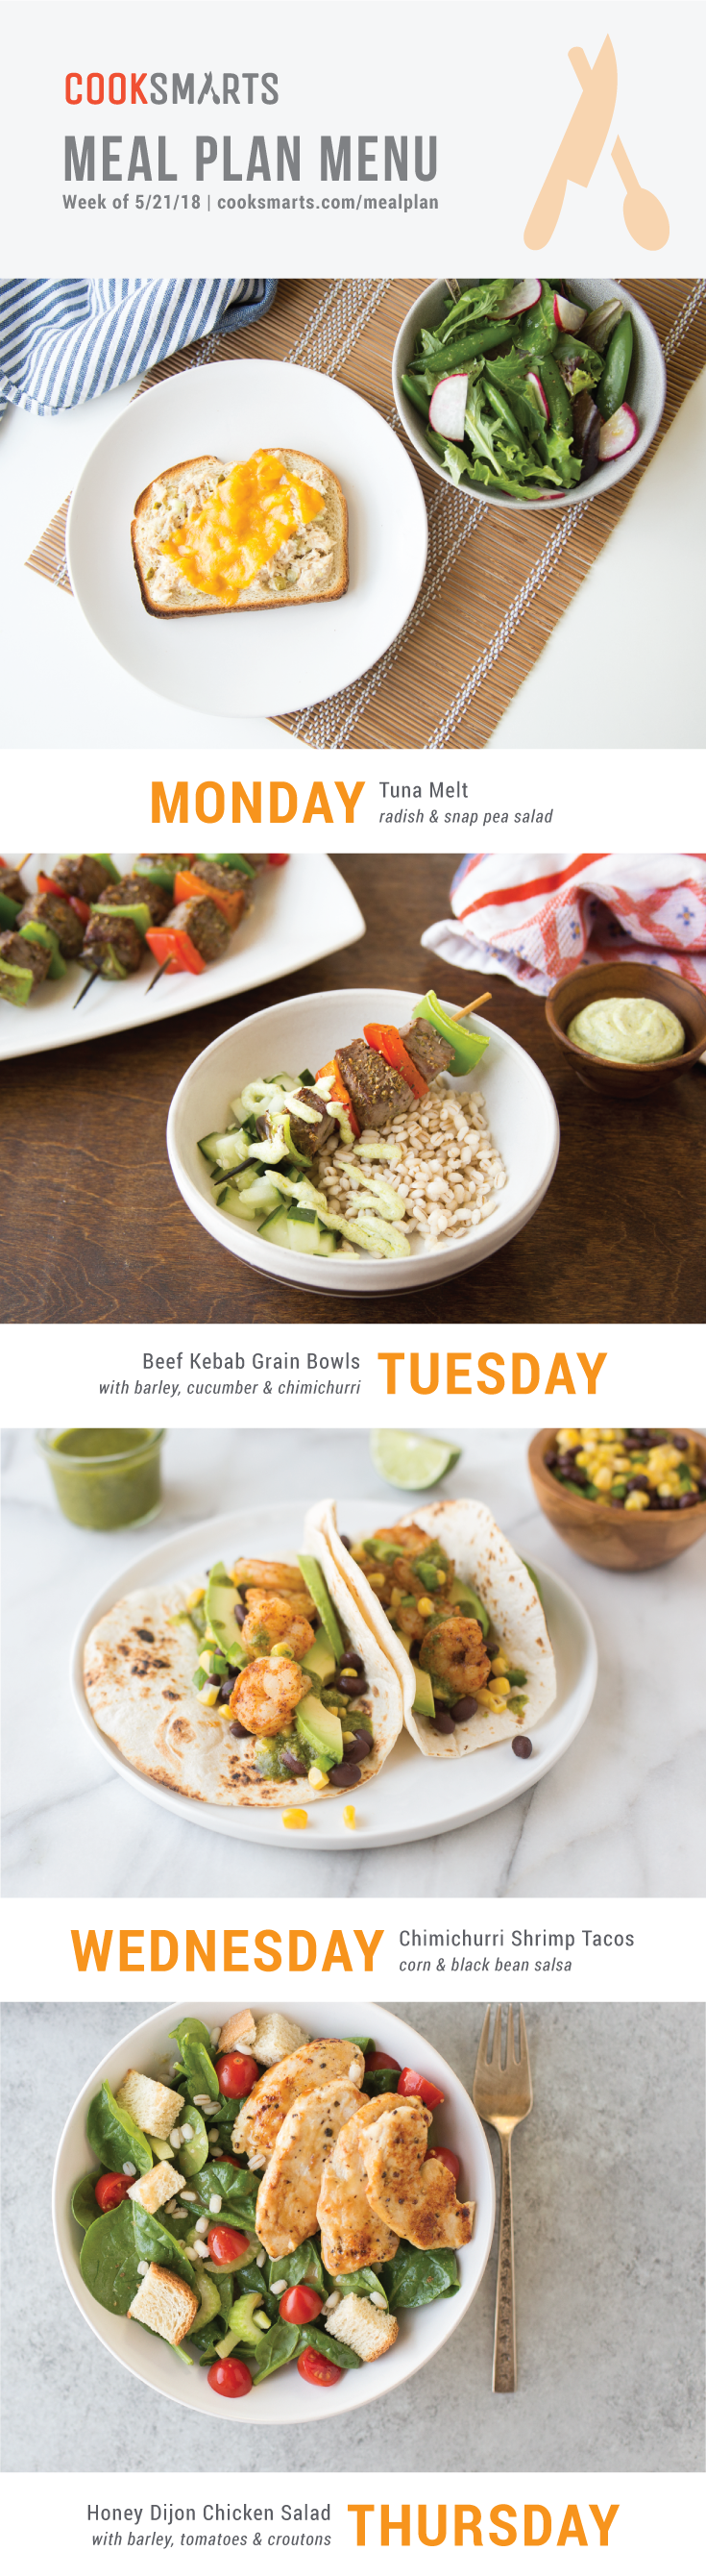 Weekly Meal Planner | Menu for Week of 5/21/18 via Cook Smarts